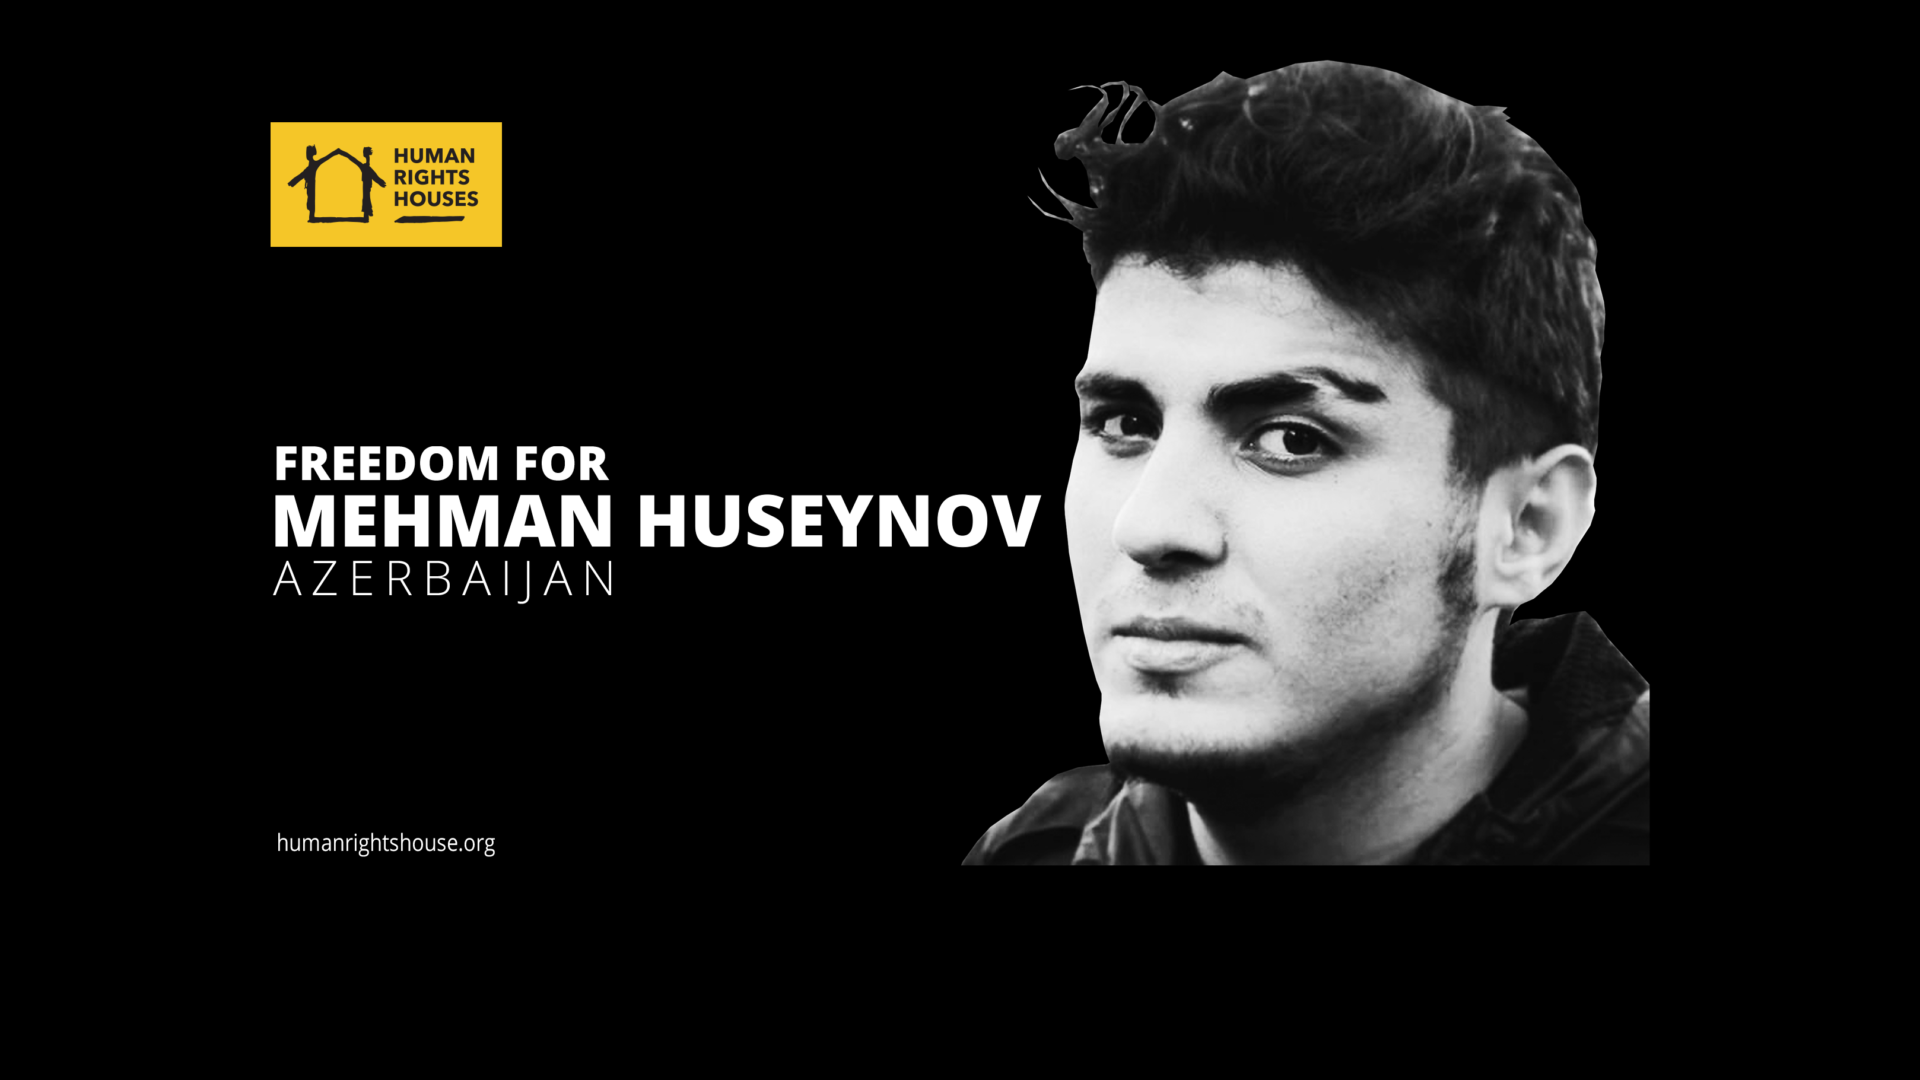 Escalating repression against Mehman Huseynov